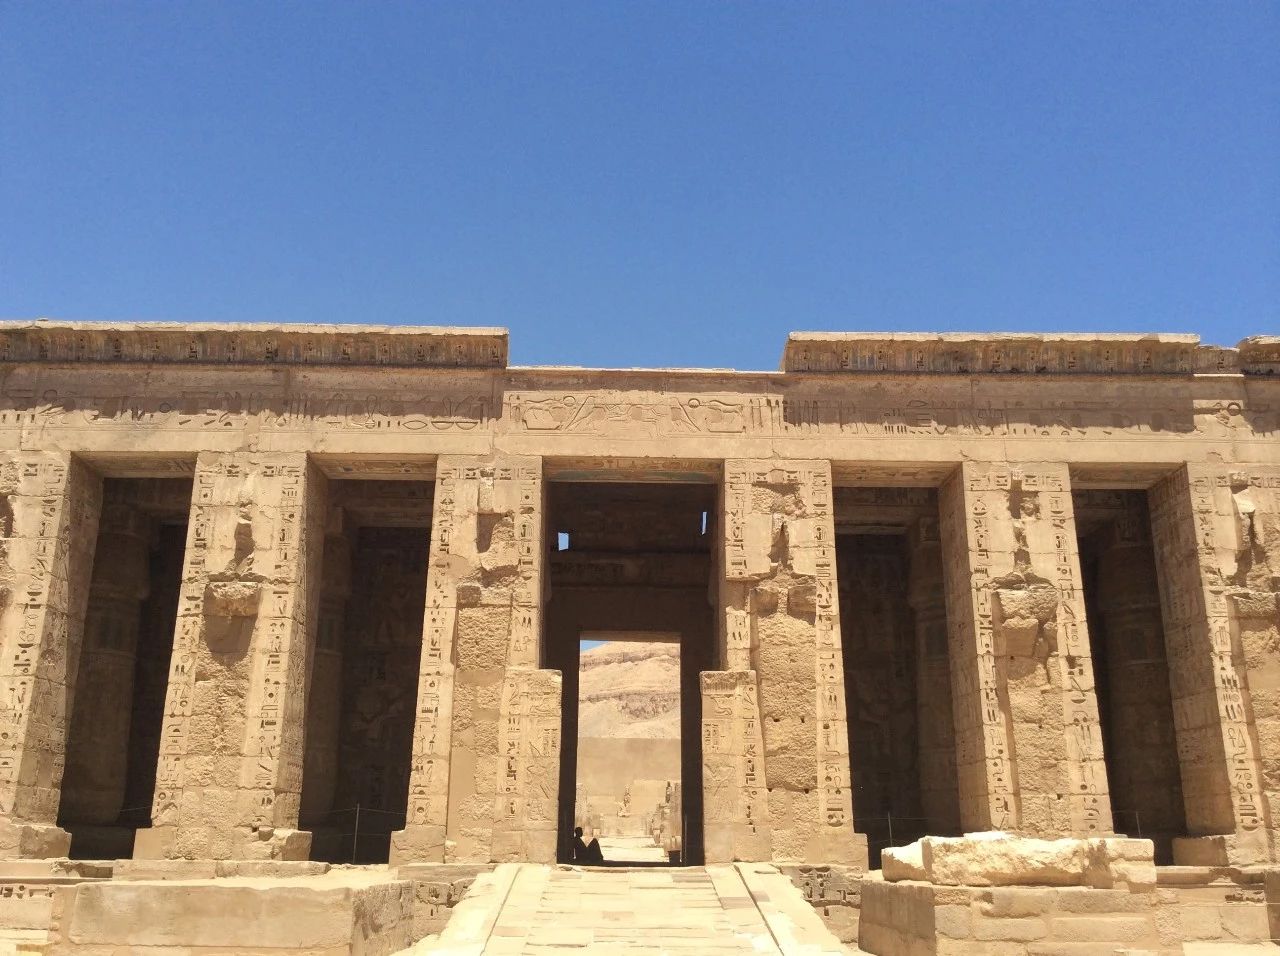 【卡尔纳克神庙】是古埃及最大的神庙,精湛的建筑工艺满含中王朝时期